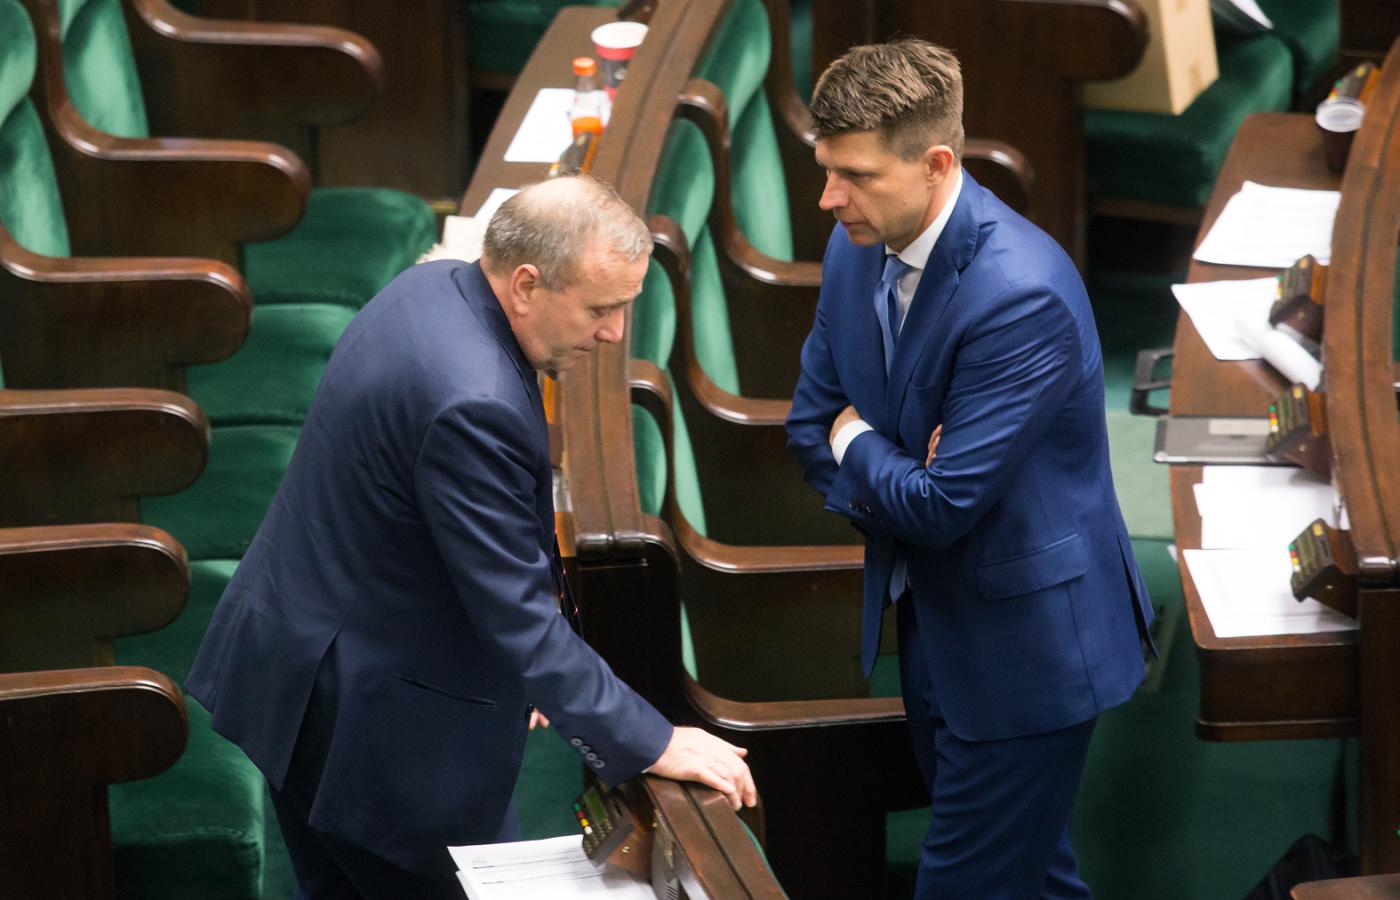 O tytuł lidera opozycji walczą Grzegorz Schetyna i Ryszard Petru.